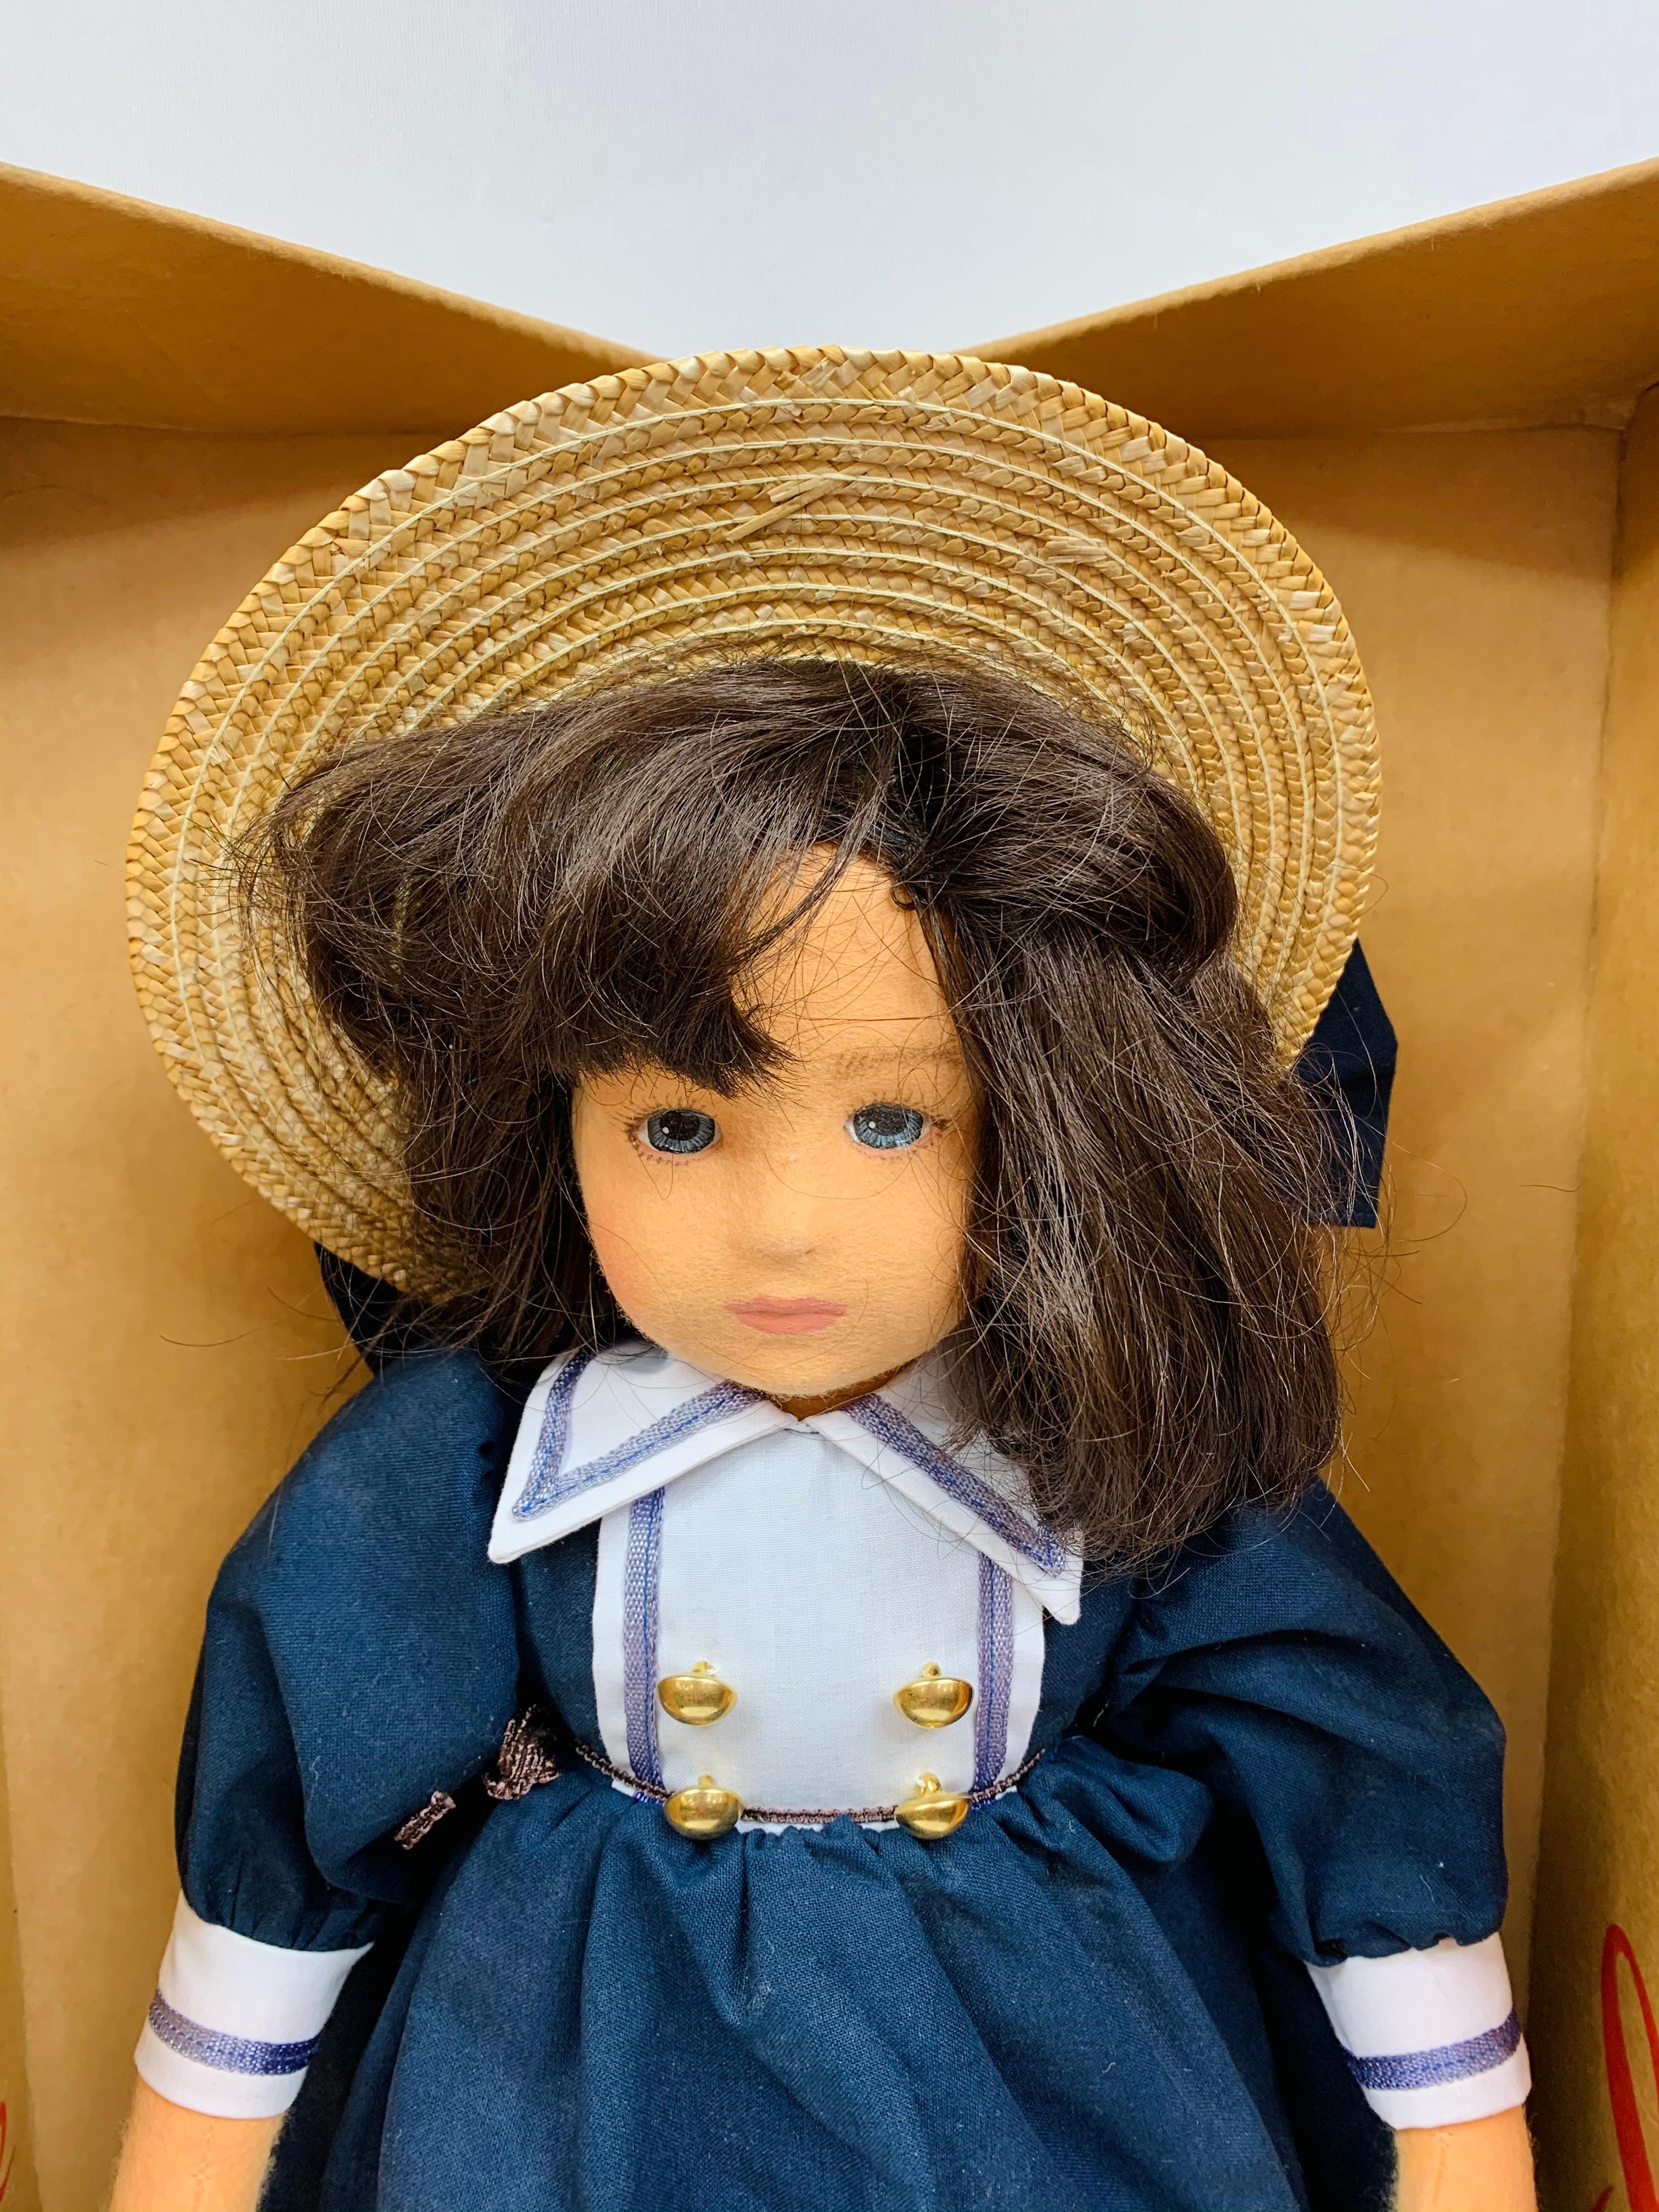 Die Lenci-Puppe ist eine der schönsten Puppen, die je hergestellt wurden. Diese seltene, schöne, originale Lenci Puppe aus den 1980er Jahren. Die Puppe wurde 1996 auf der Nürnberger Spielwarenmesse gekauft und hat noch die Originaletiketten sowie